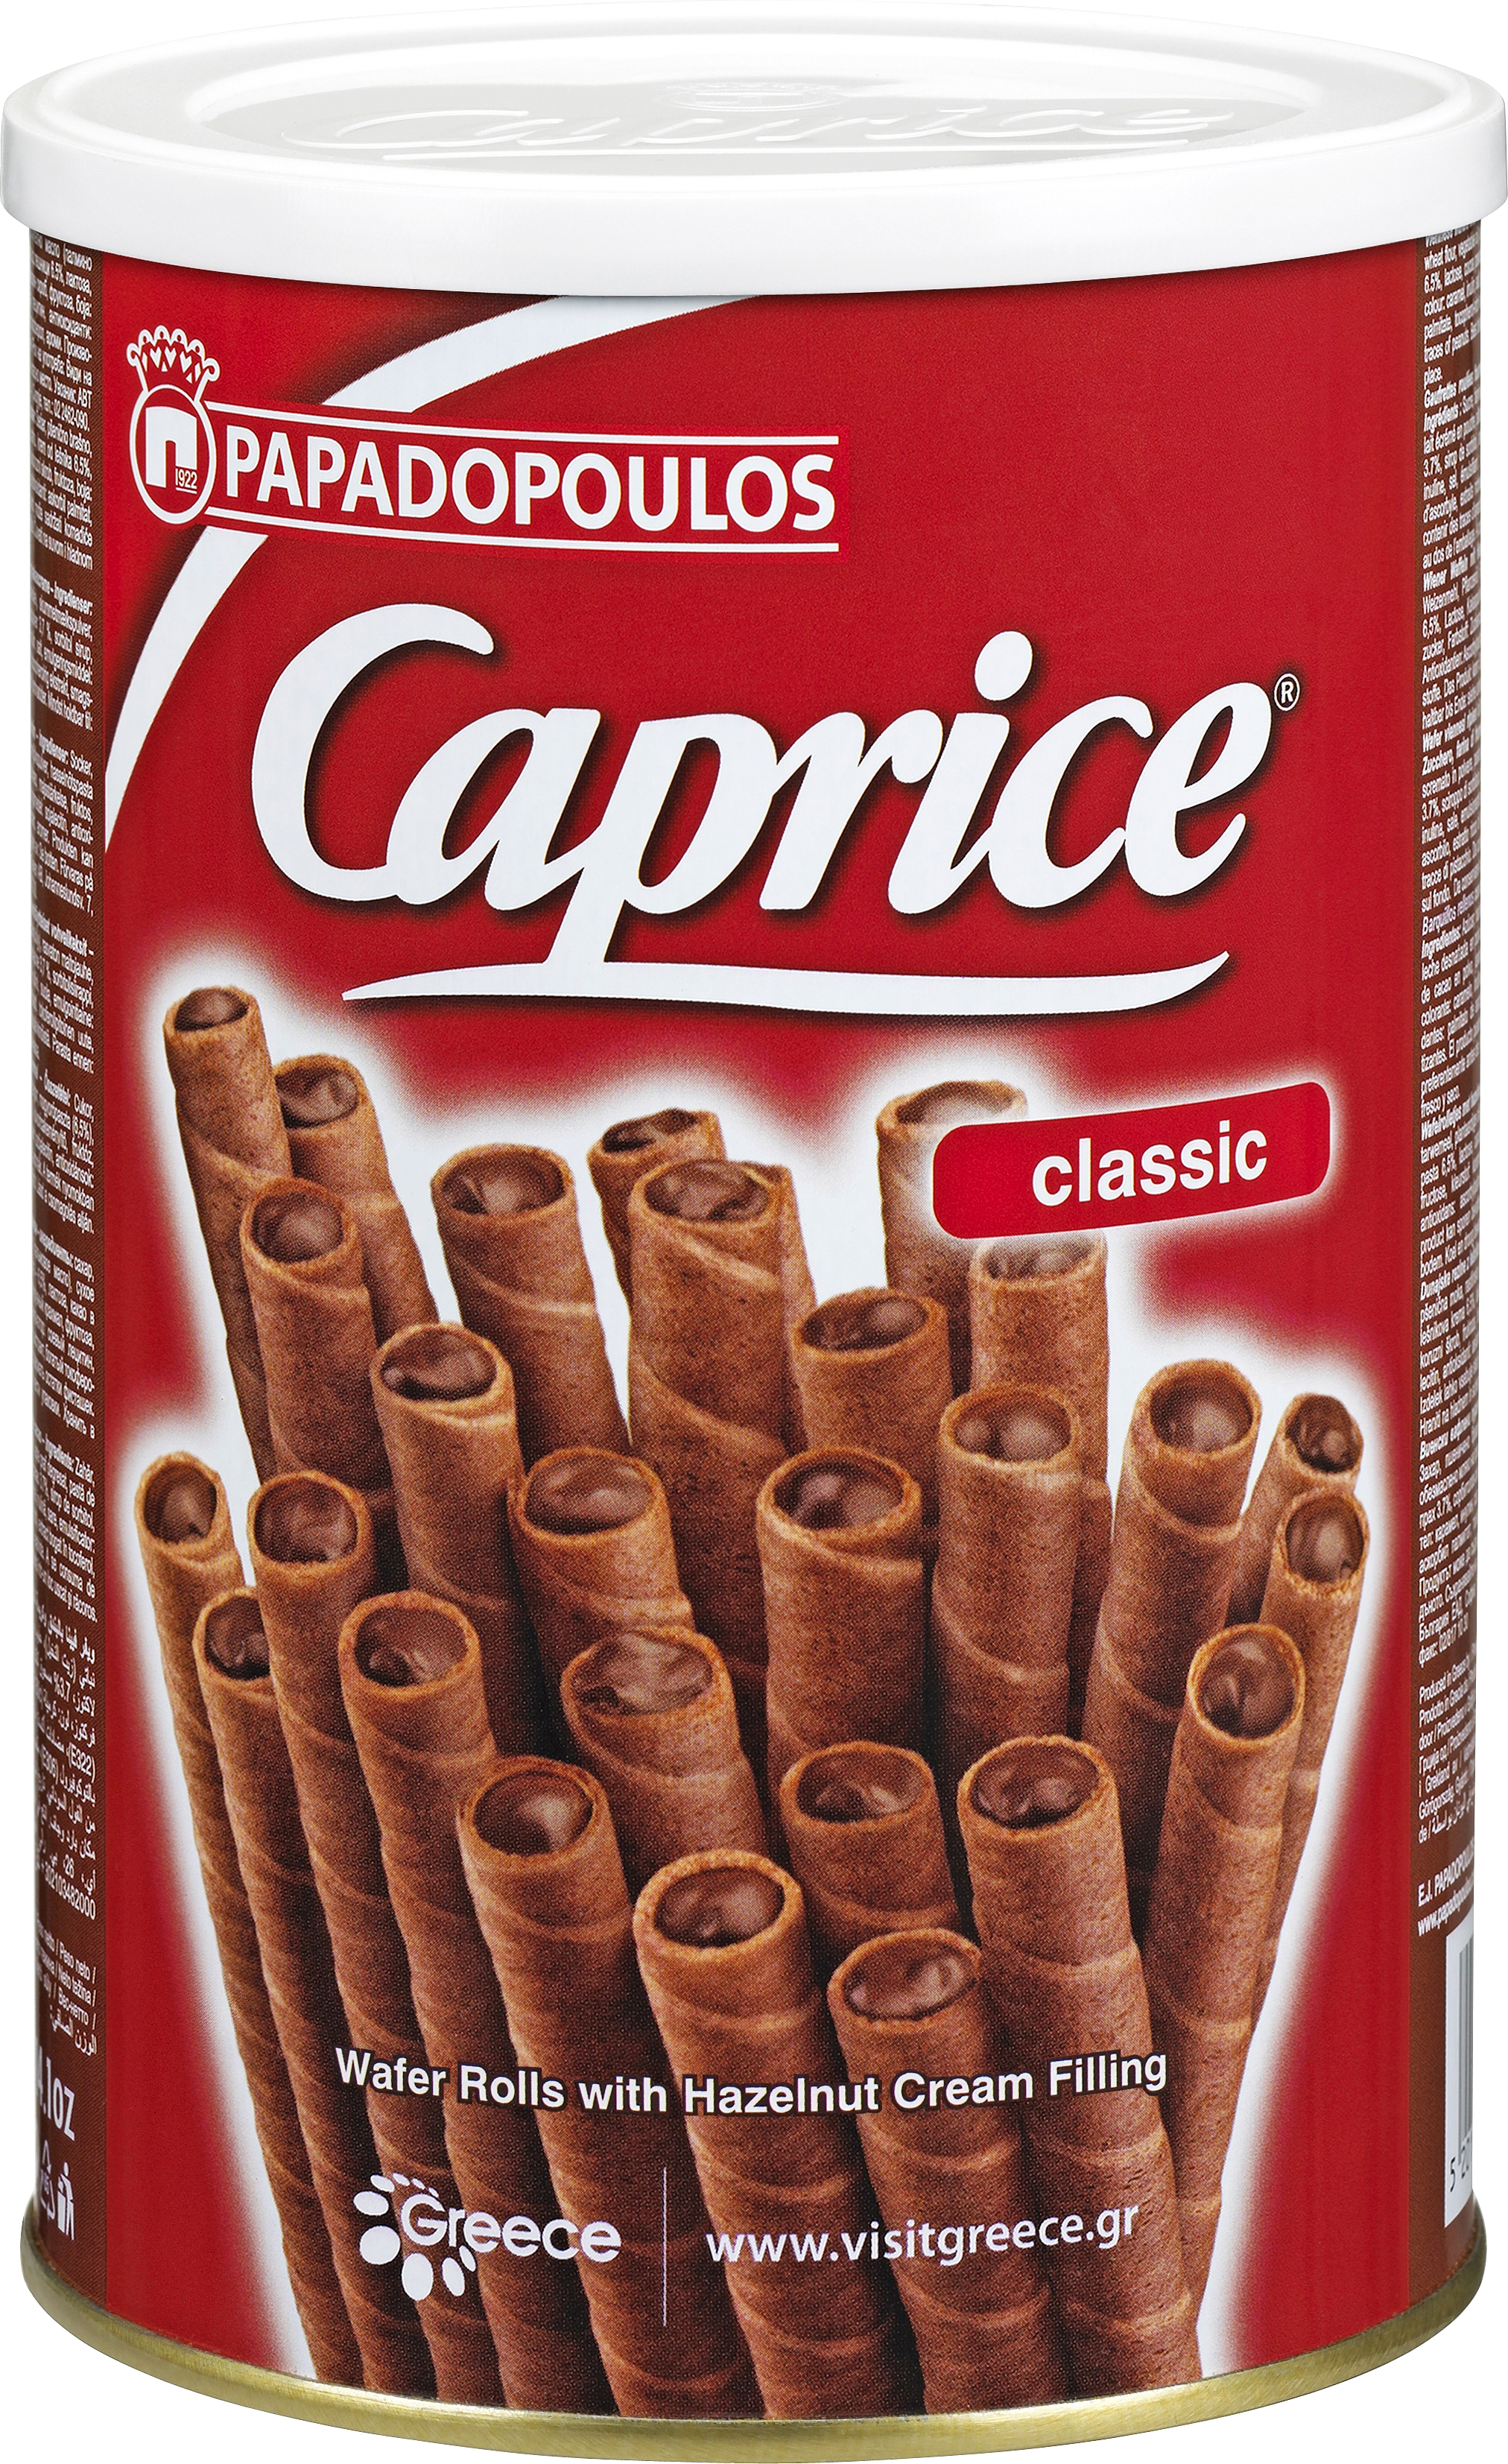 Papadopoulos Caprice Classic med Hasselnøddecreme 400 VAFLER - VIN MED MERE .DK